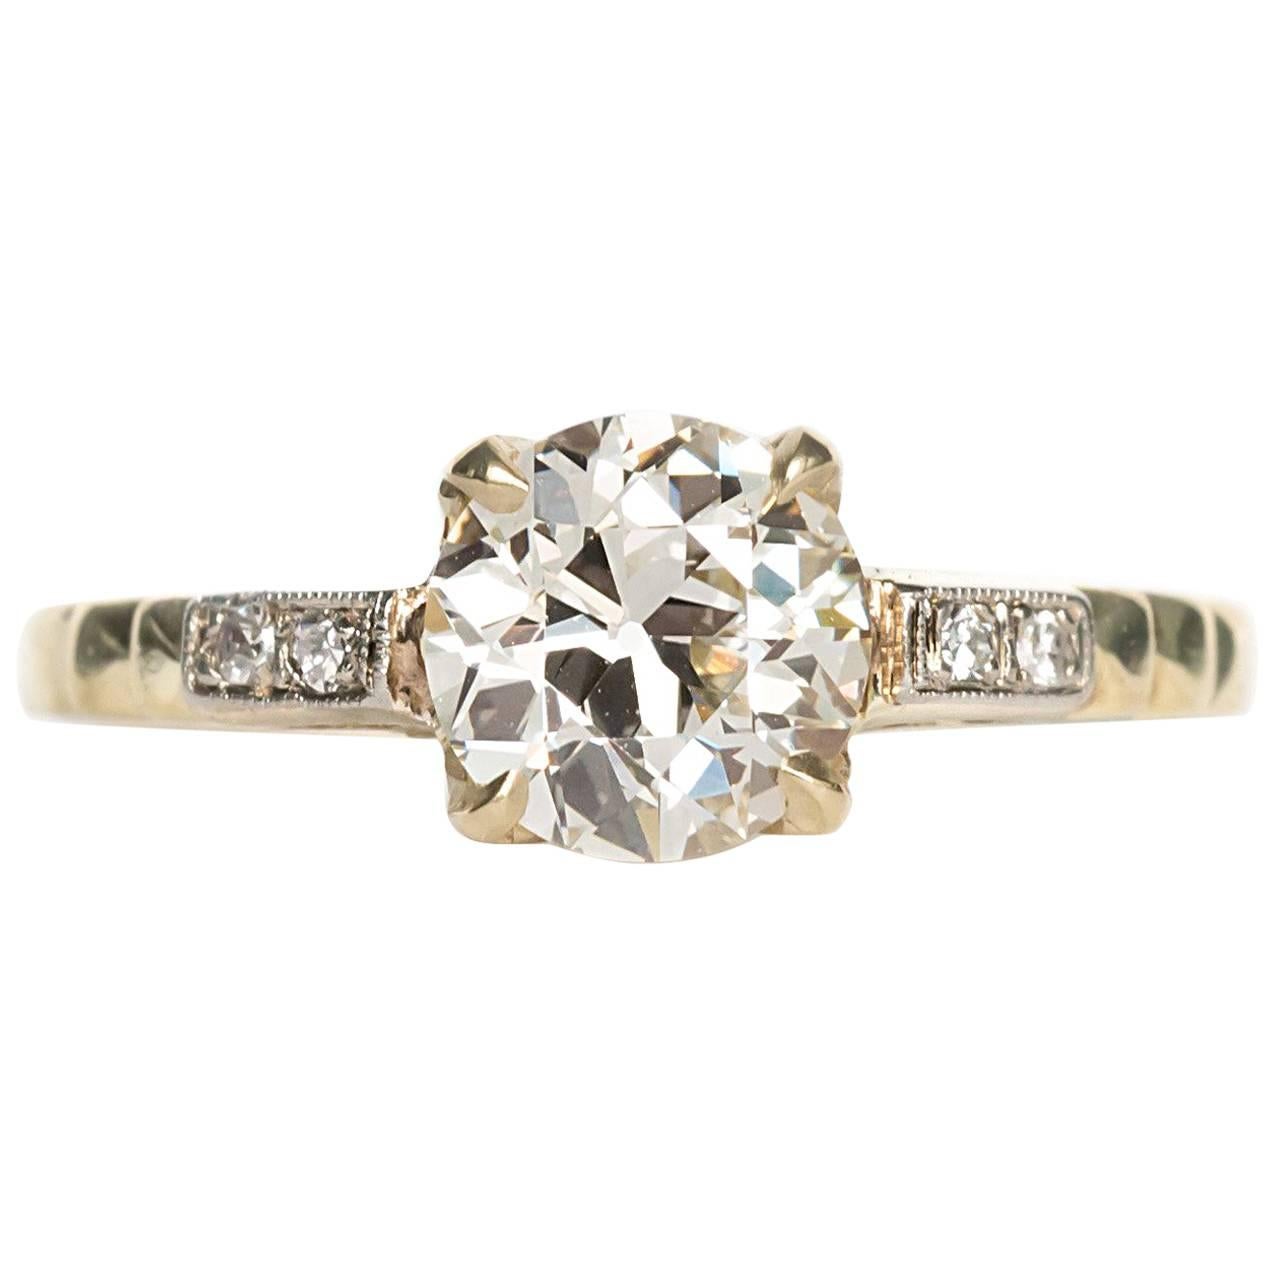 1910 Edwardian Old European Cut Diamond Engagement Ring